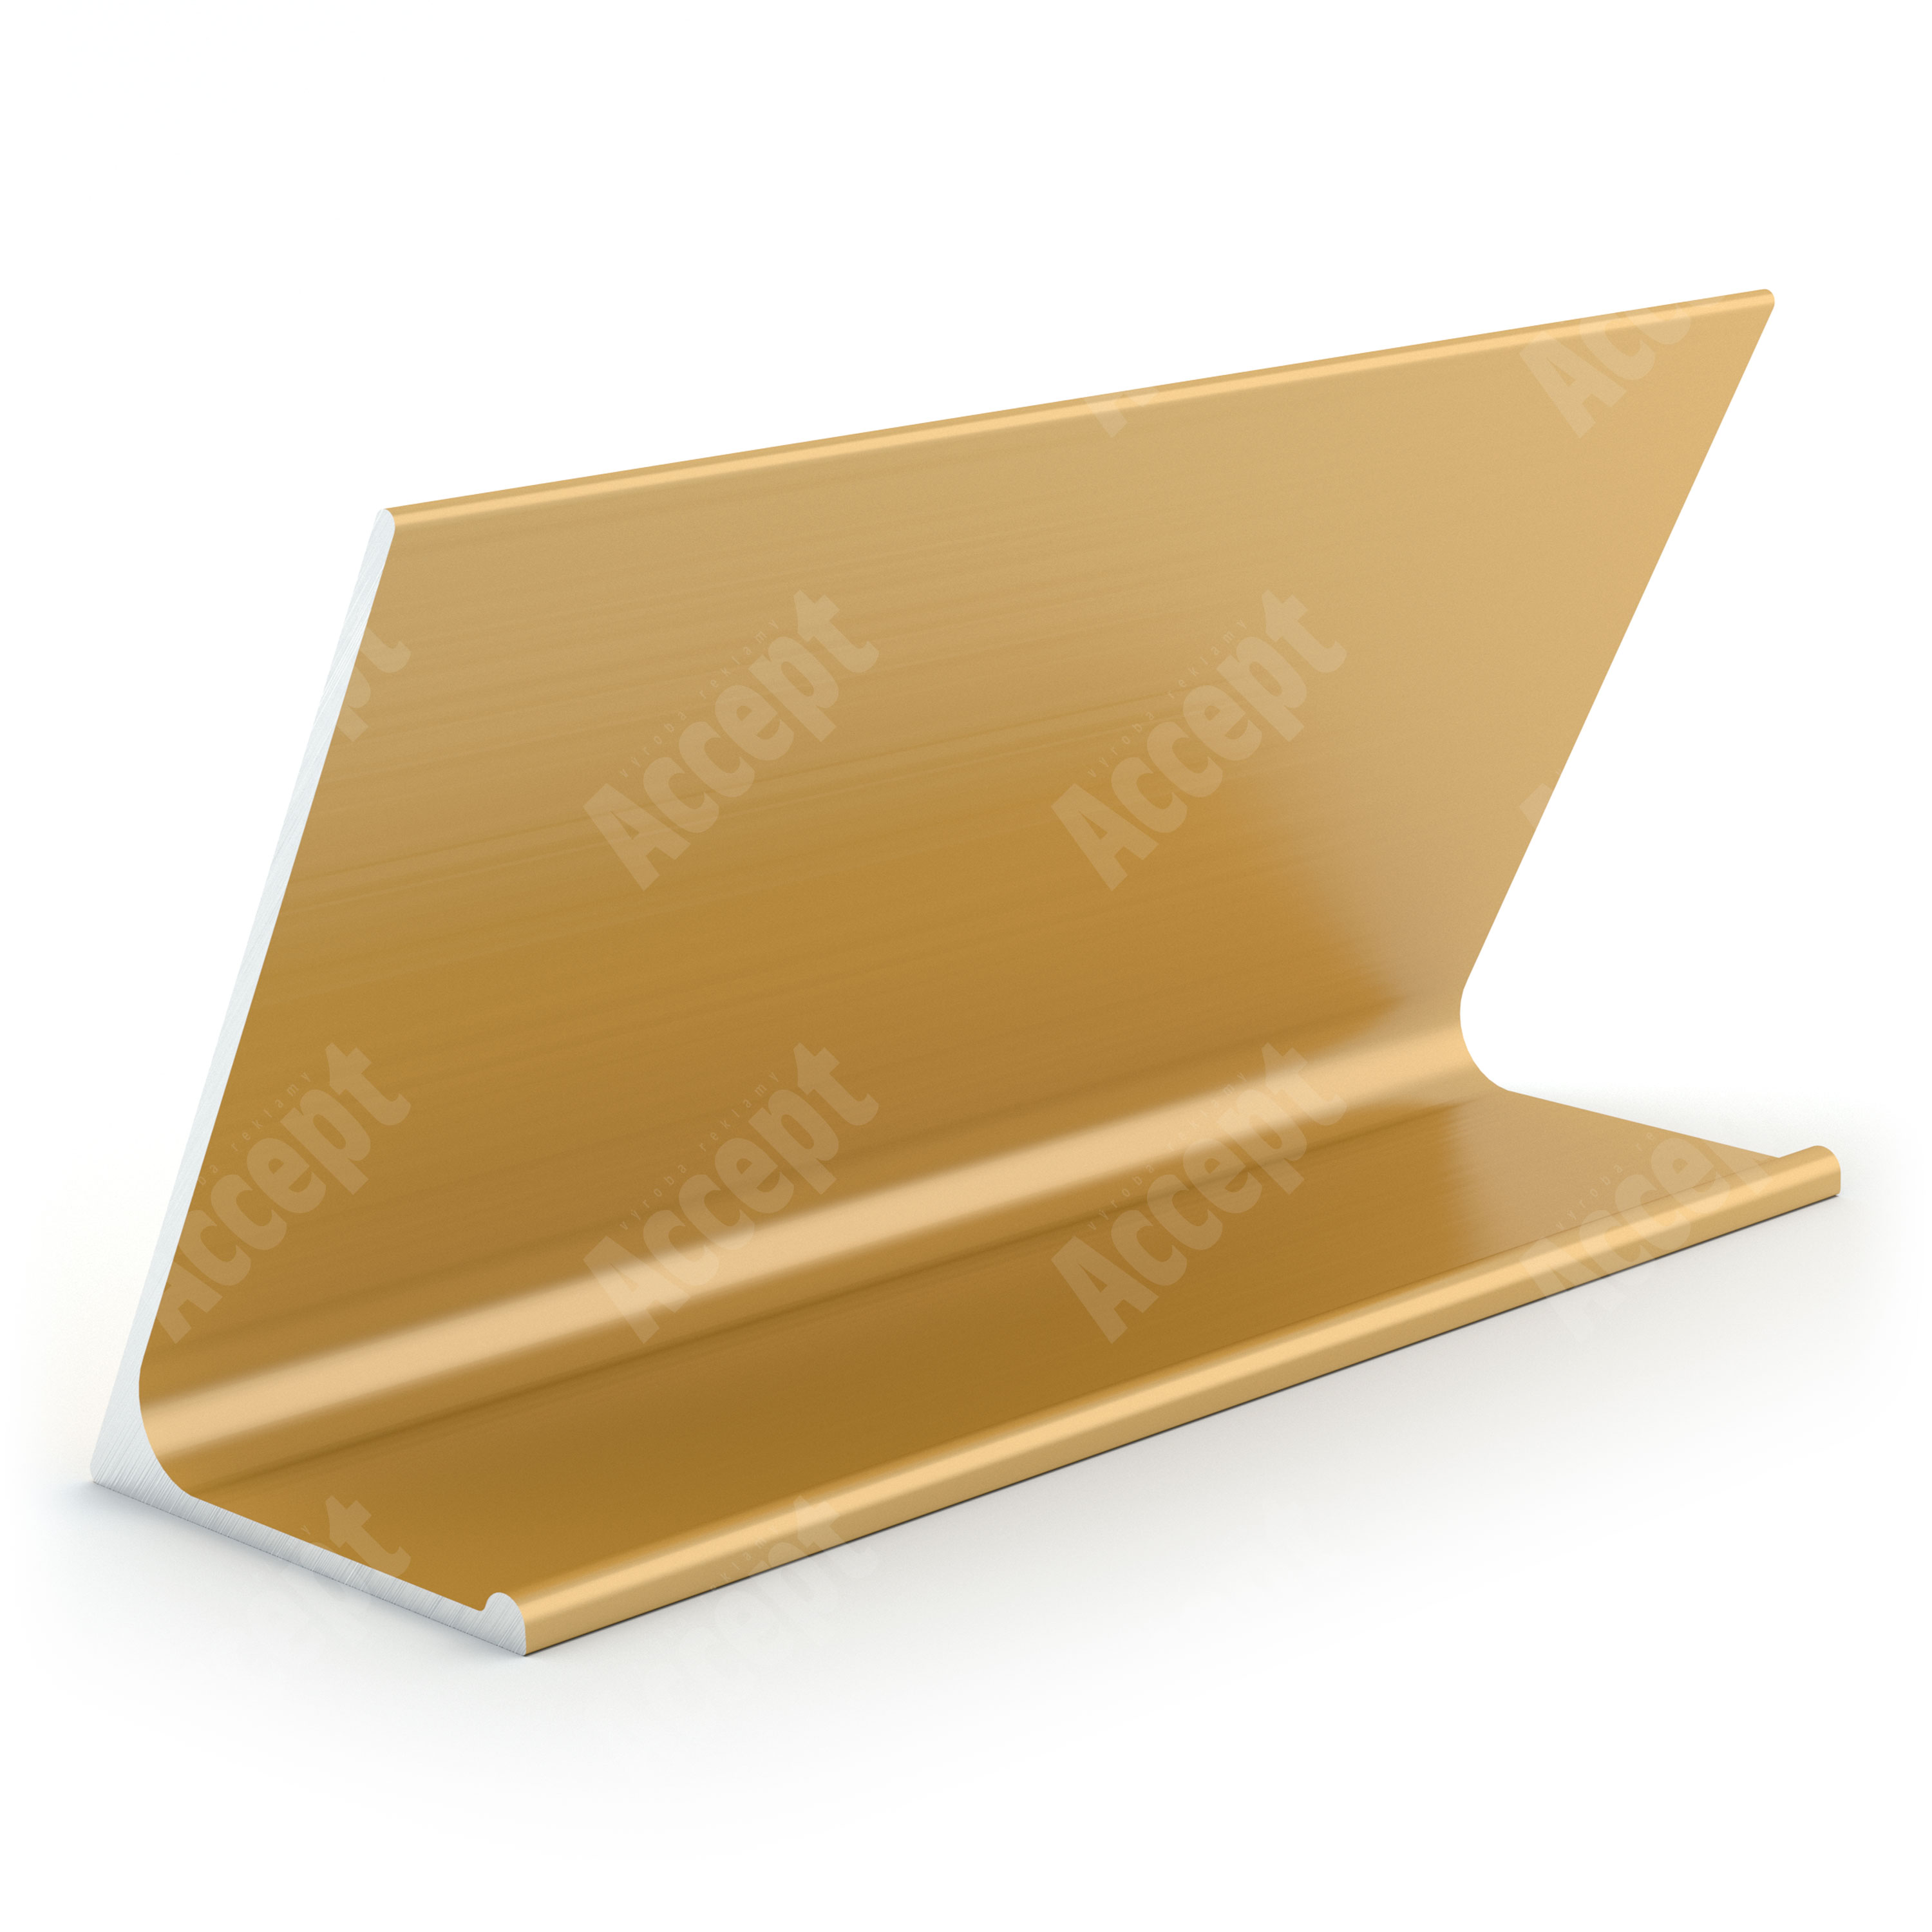 zlatý stolní informační stojánek D-62 ze zadní strany "i" - D-62.ZLA.105.008